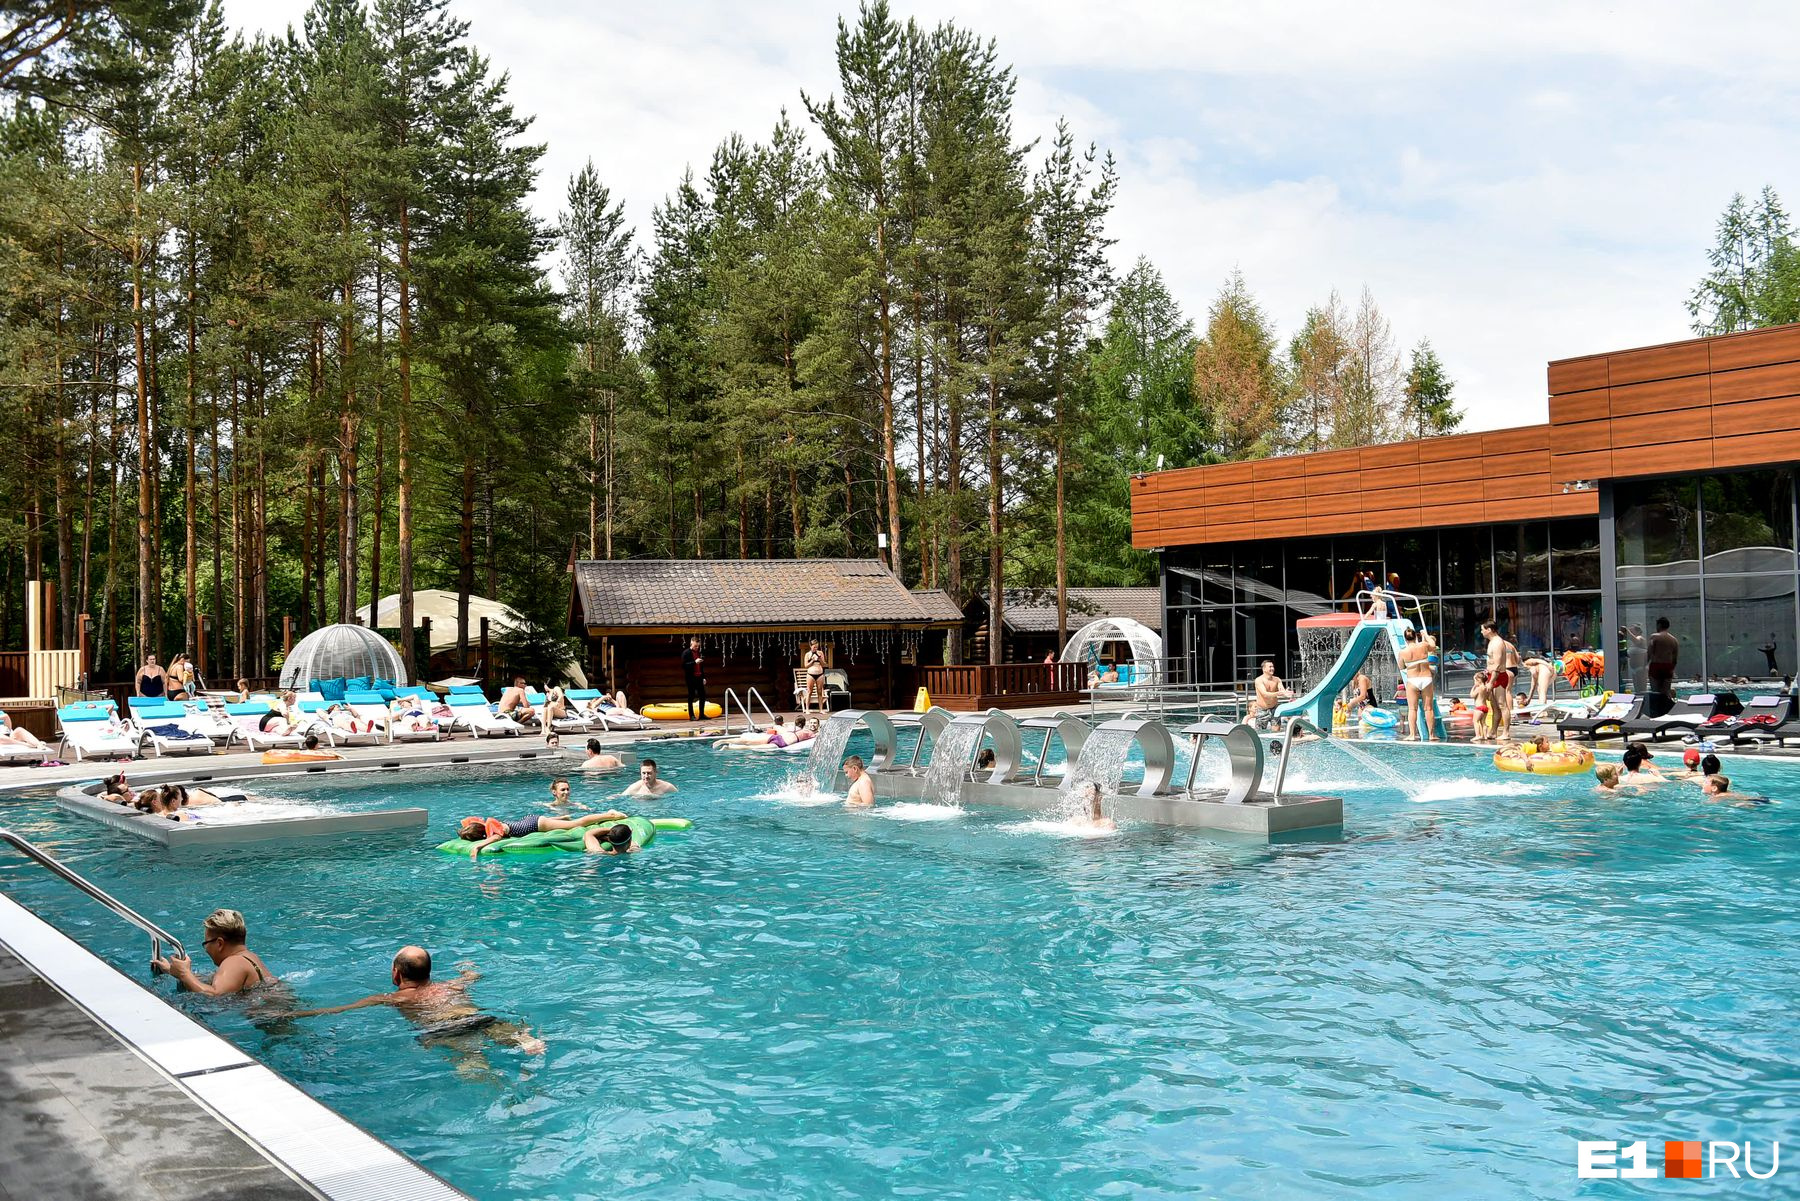 Время купаться: публикуем карту с открытыми бассейнами в Барнауле